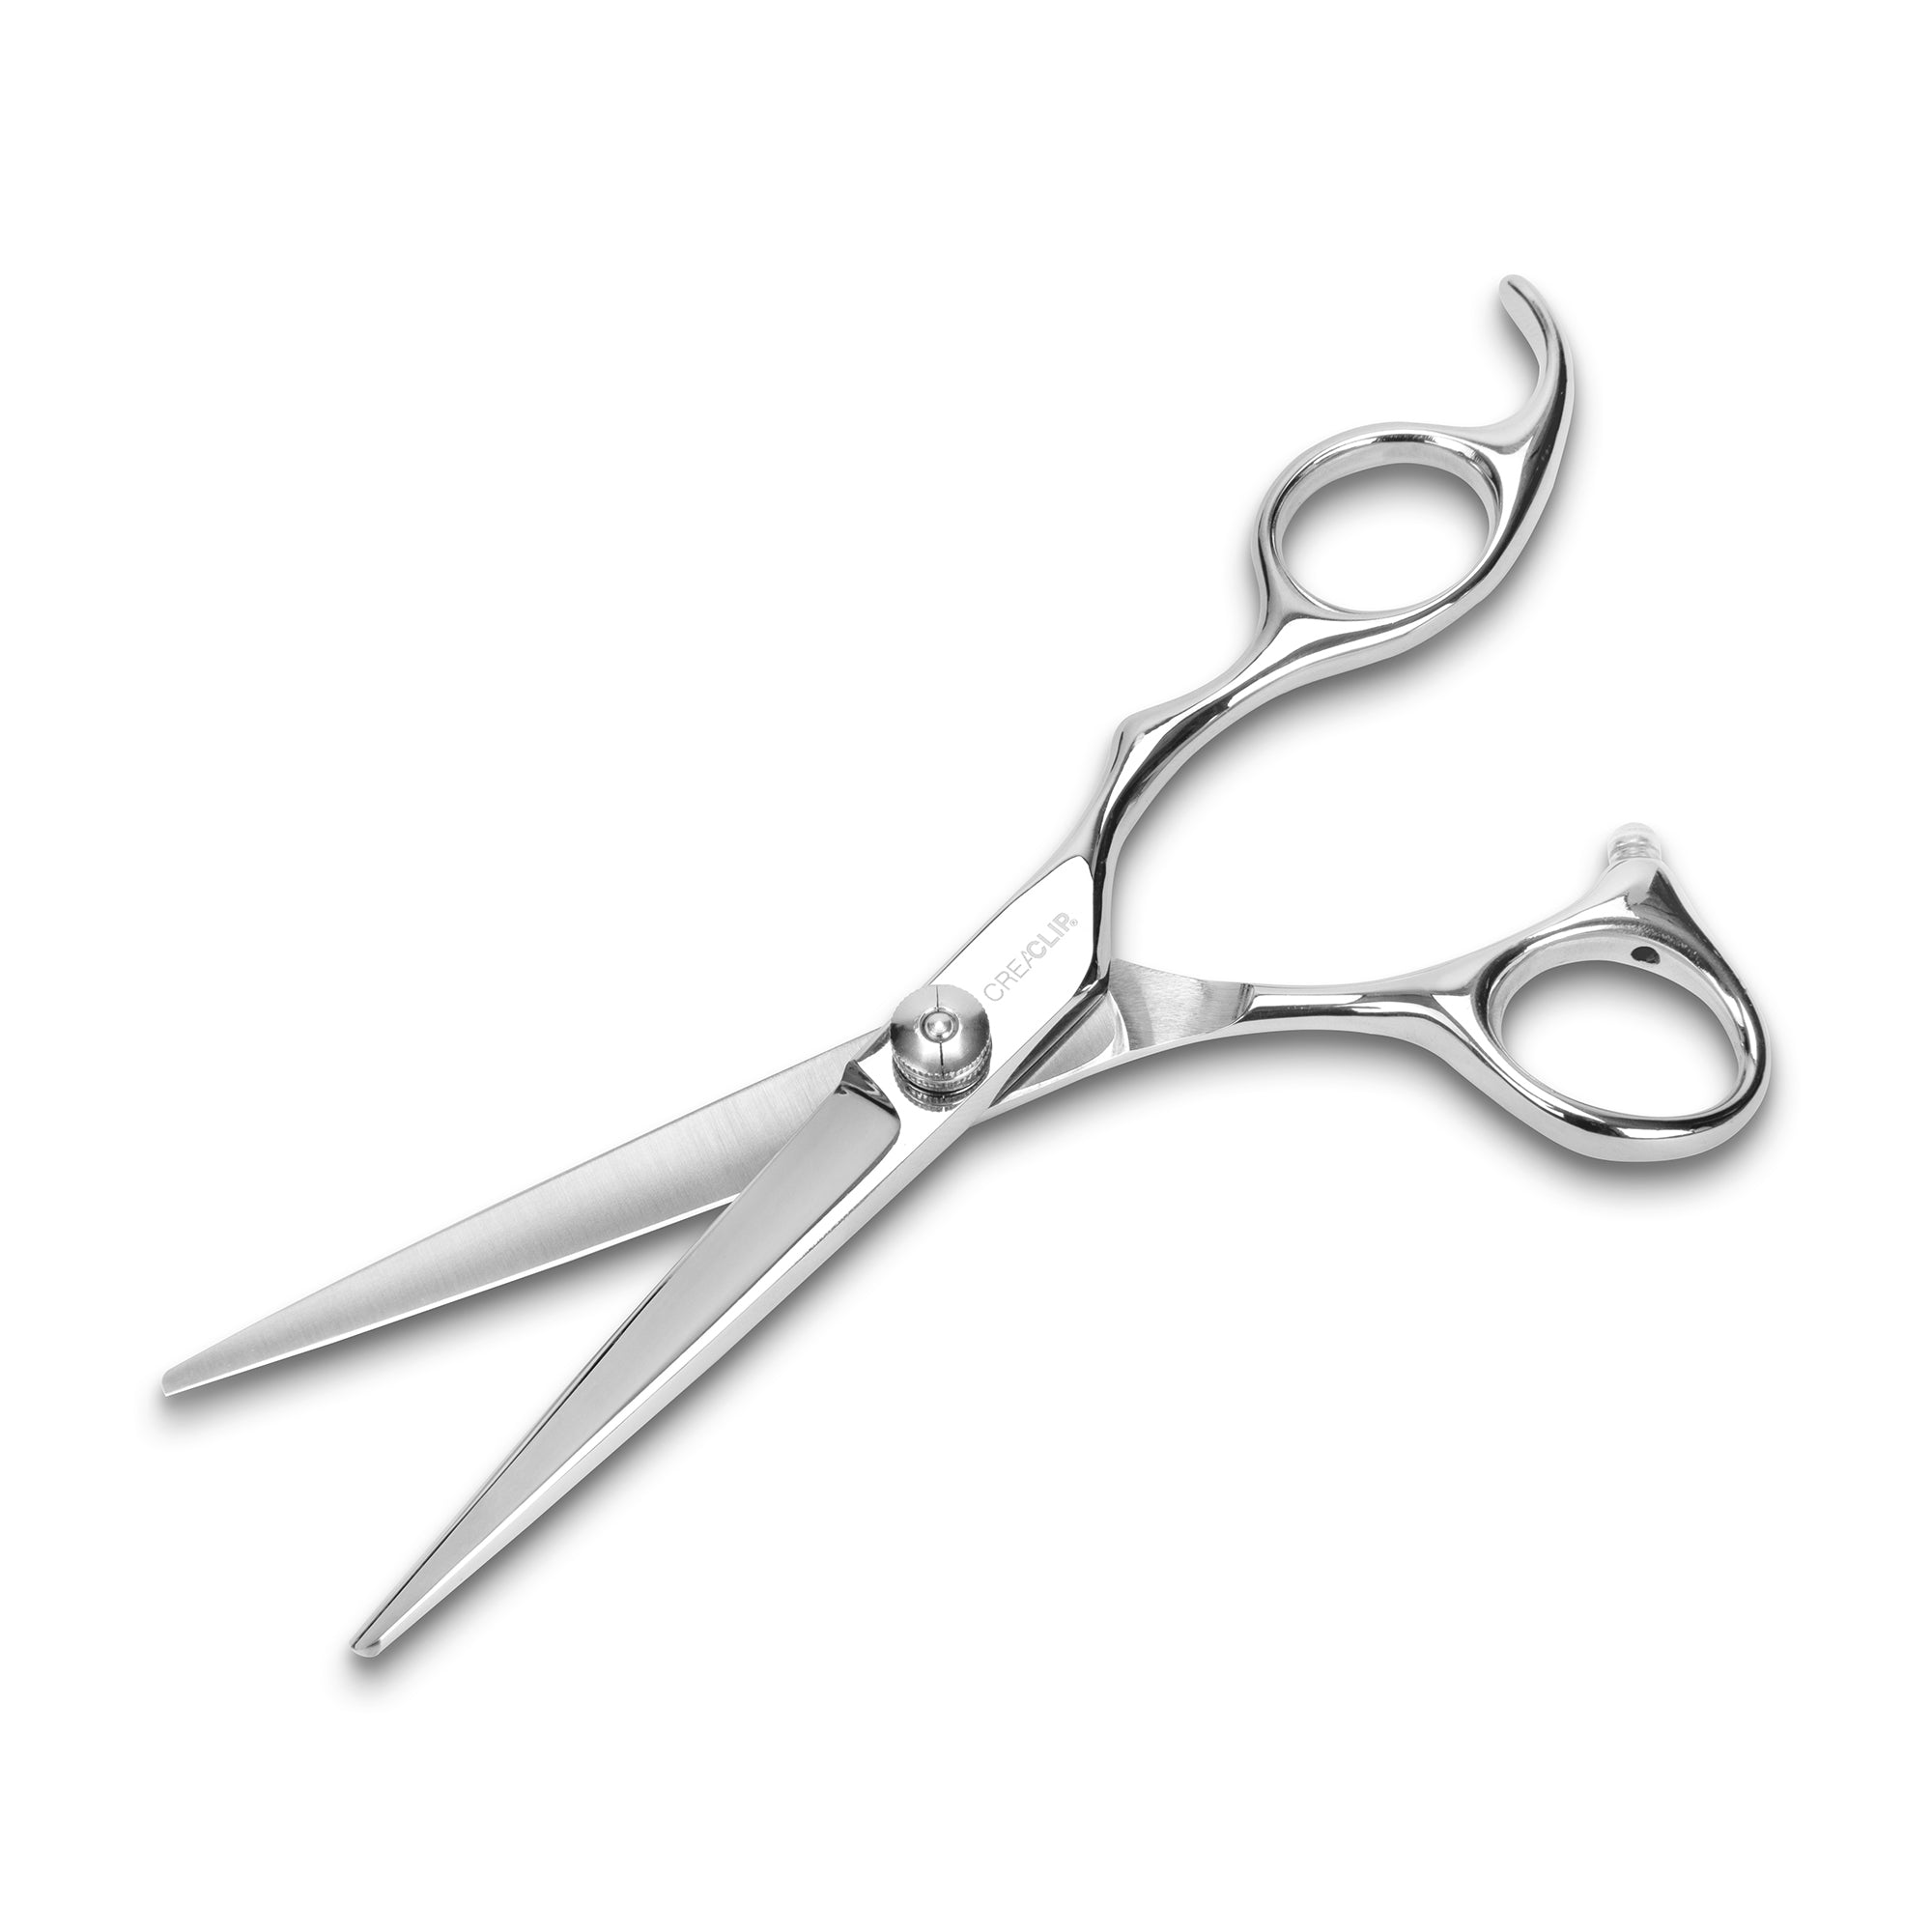 Buy CreaClip Premium Professional Hair Cutting Scissors at $19.99